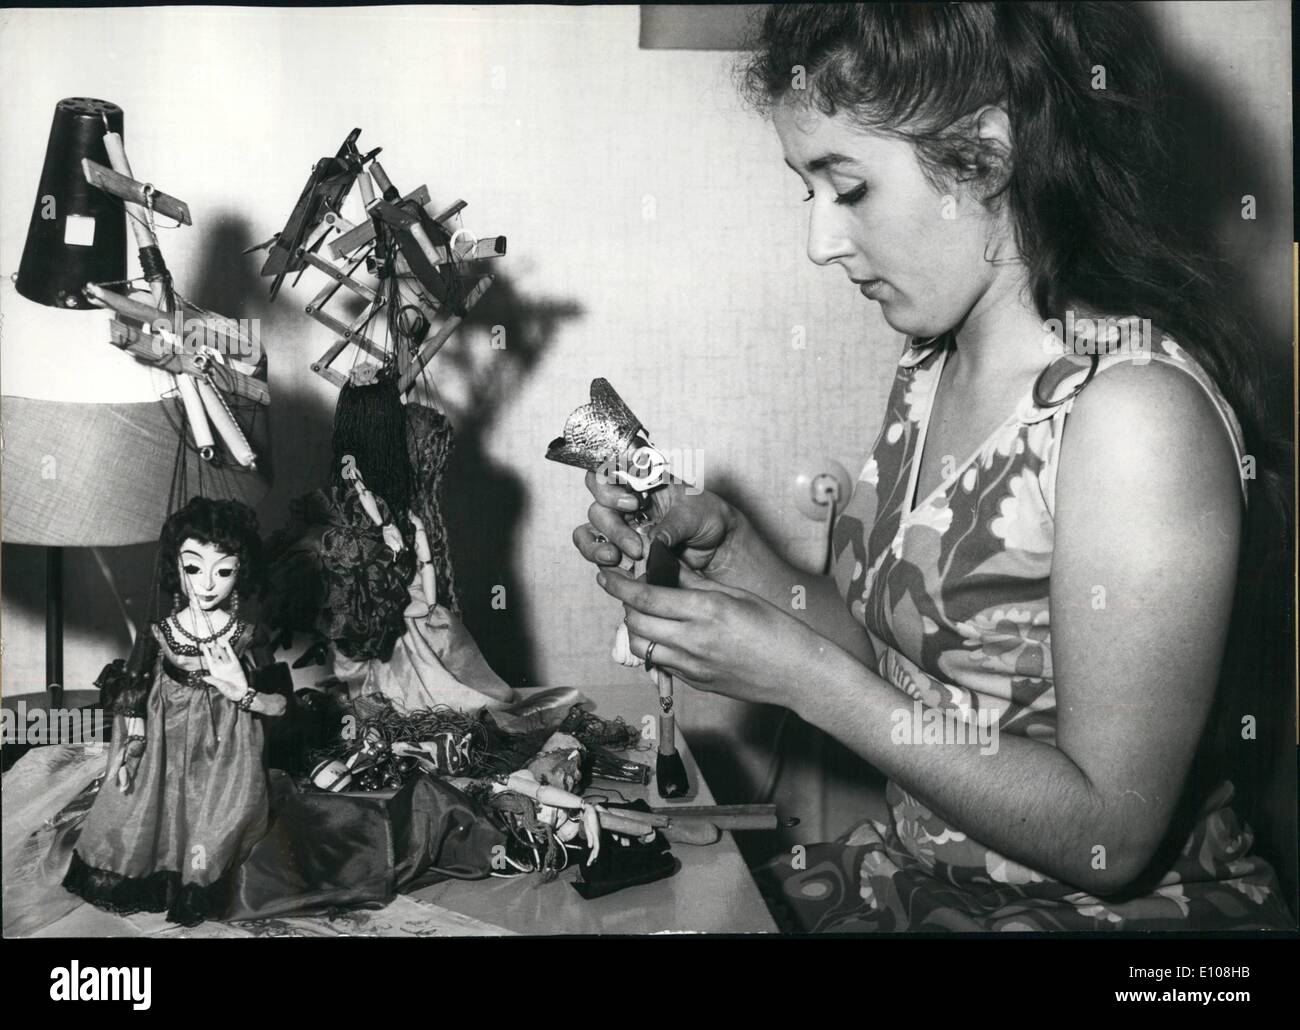 3. März 1970 - ein leidenschaftlicher Marionetten-Spieler. Adelheid fehlen-Rabien (Bild) lebt in Berlin. Als 3 Jahre alt, sie besucht die Augsburger Puppentheater und hat schon von Puppen fasziniert. Wenn werkelte sie 10 Jahre alt, ihre erste Puppe von Wachs. Nun, 25 Jahre alt, sie besitzt ein Ensemble von 150 Puppen, die sie alle selbst gemacht und sie versteht es sehr gut, die Fäden zu ziehen. Der Student Adelheid fehlen-Rabien wurde kürzlich ausgezeichnet mit dem Preis für legen Marionette Spieler der Stadt Bochum, bestehend aus 1000 DM Stockfoto